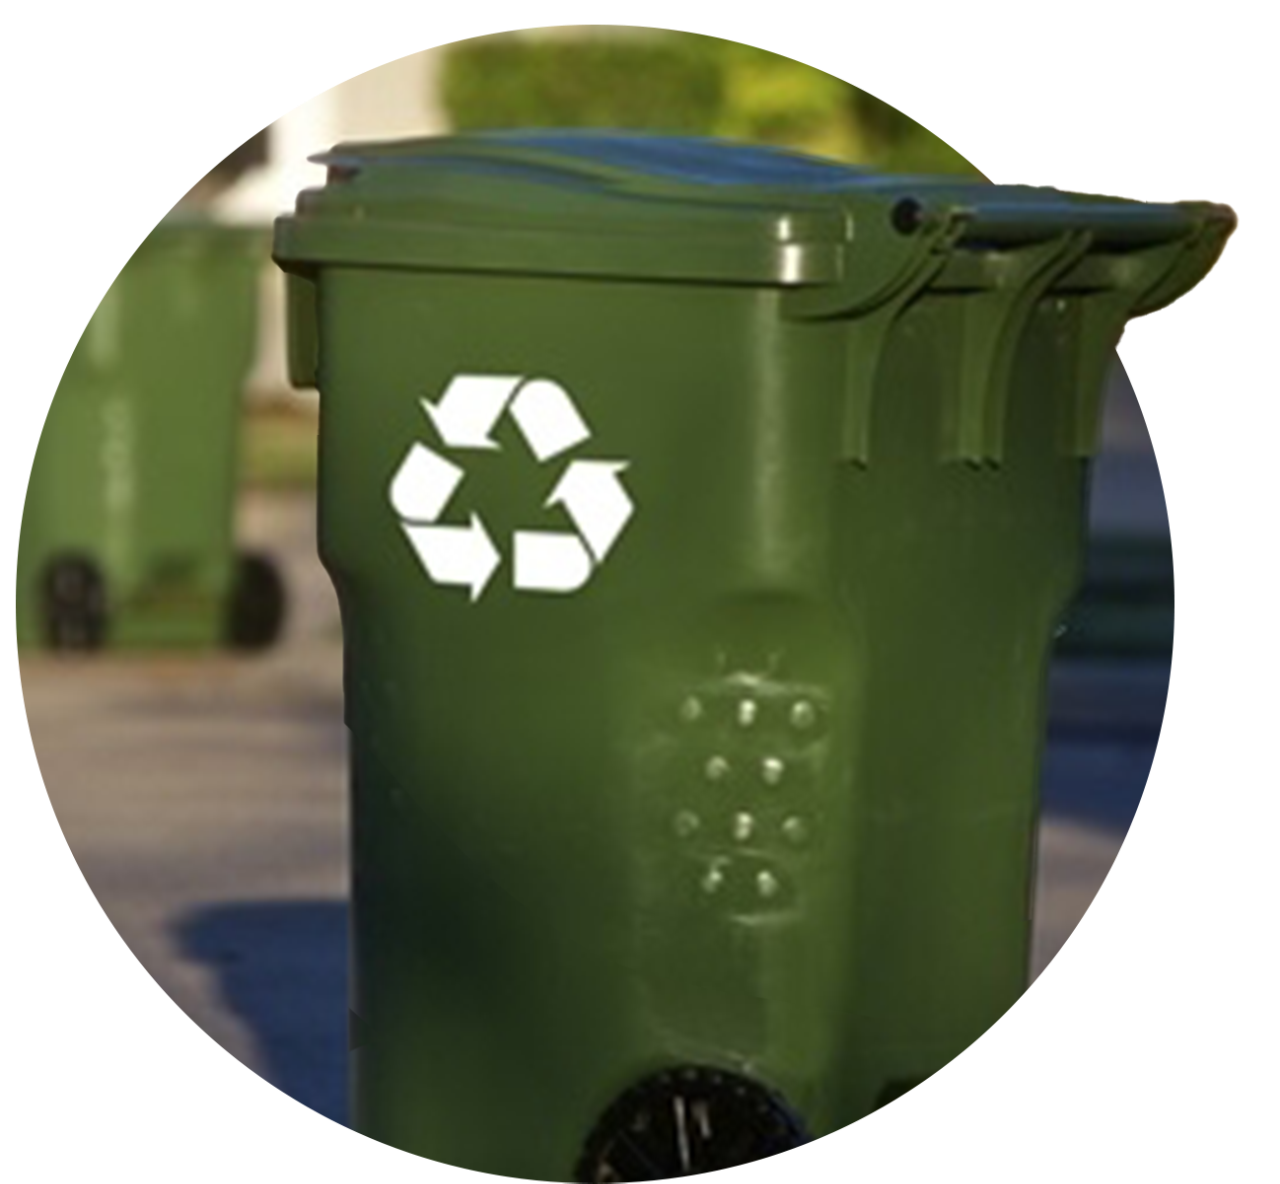 curbside recycle bin